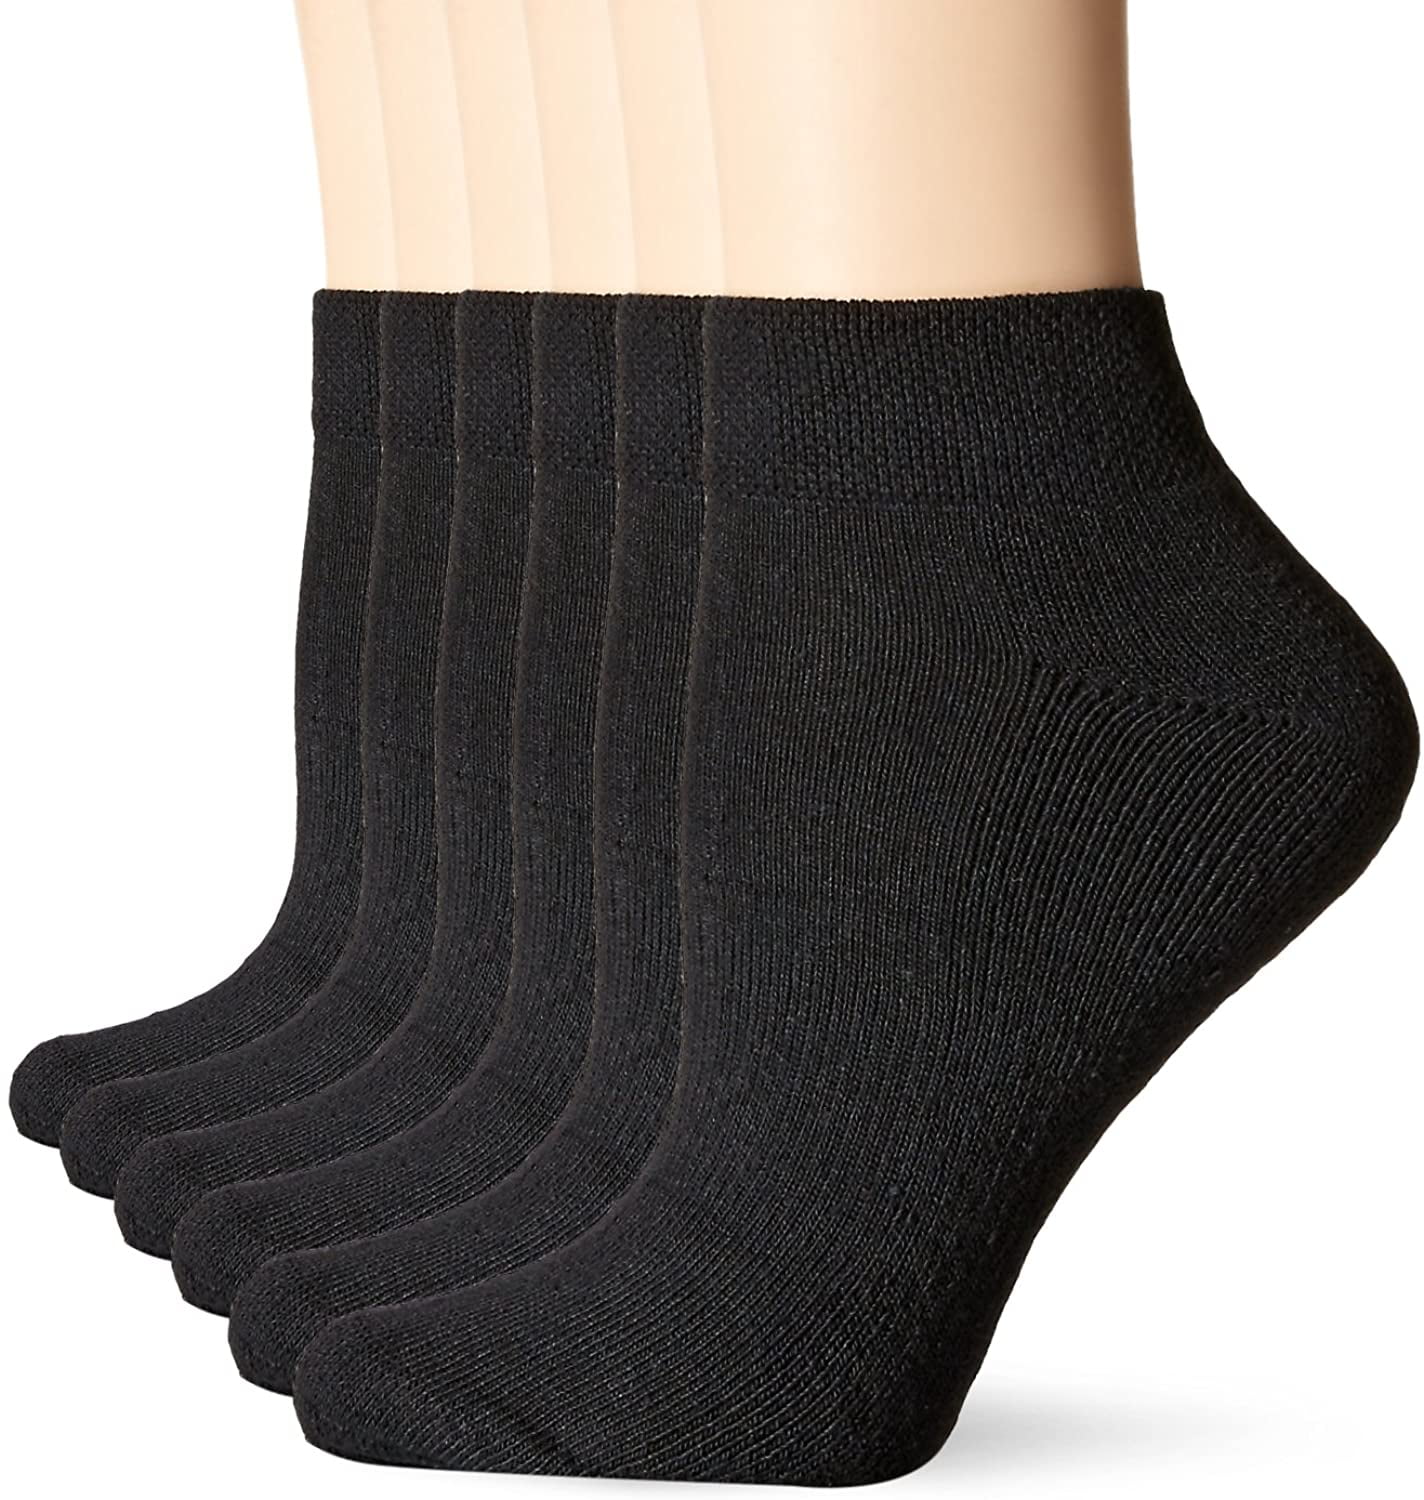 Fol P6 Sport Ankle Socks - Walmart.com